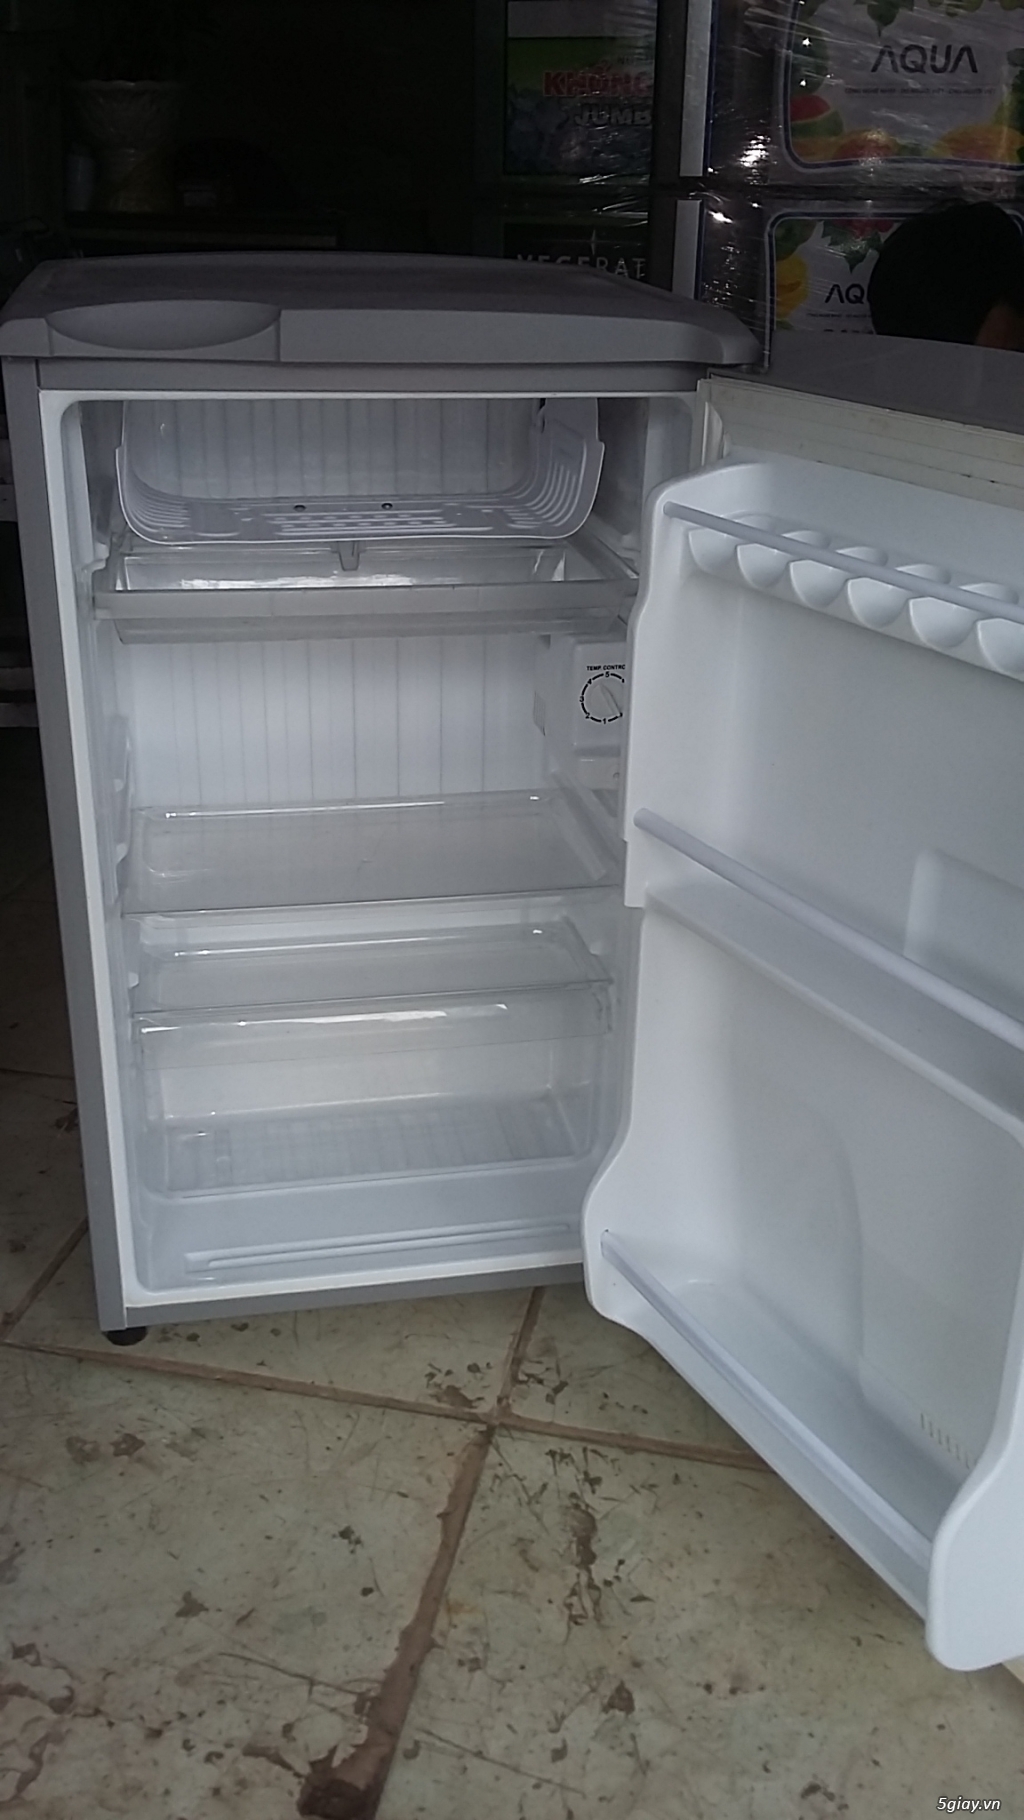 Bán tủ lạnh cũ giá cực rẻ.uy tín,bảo hành dài hạn...đủ các loại - 19